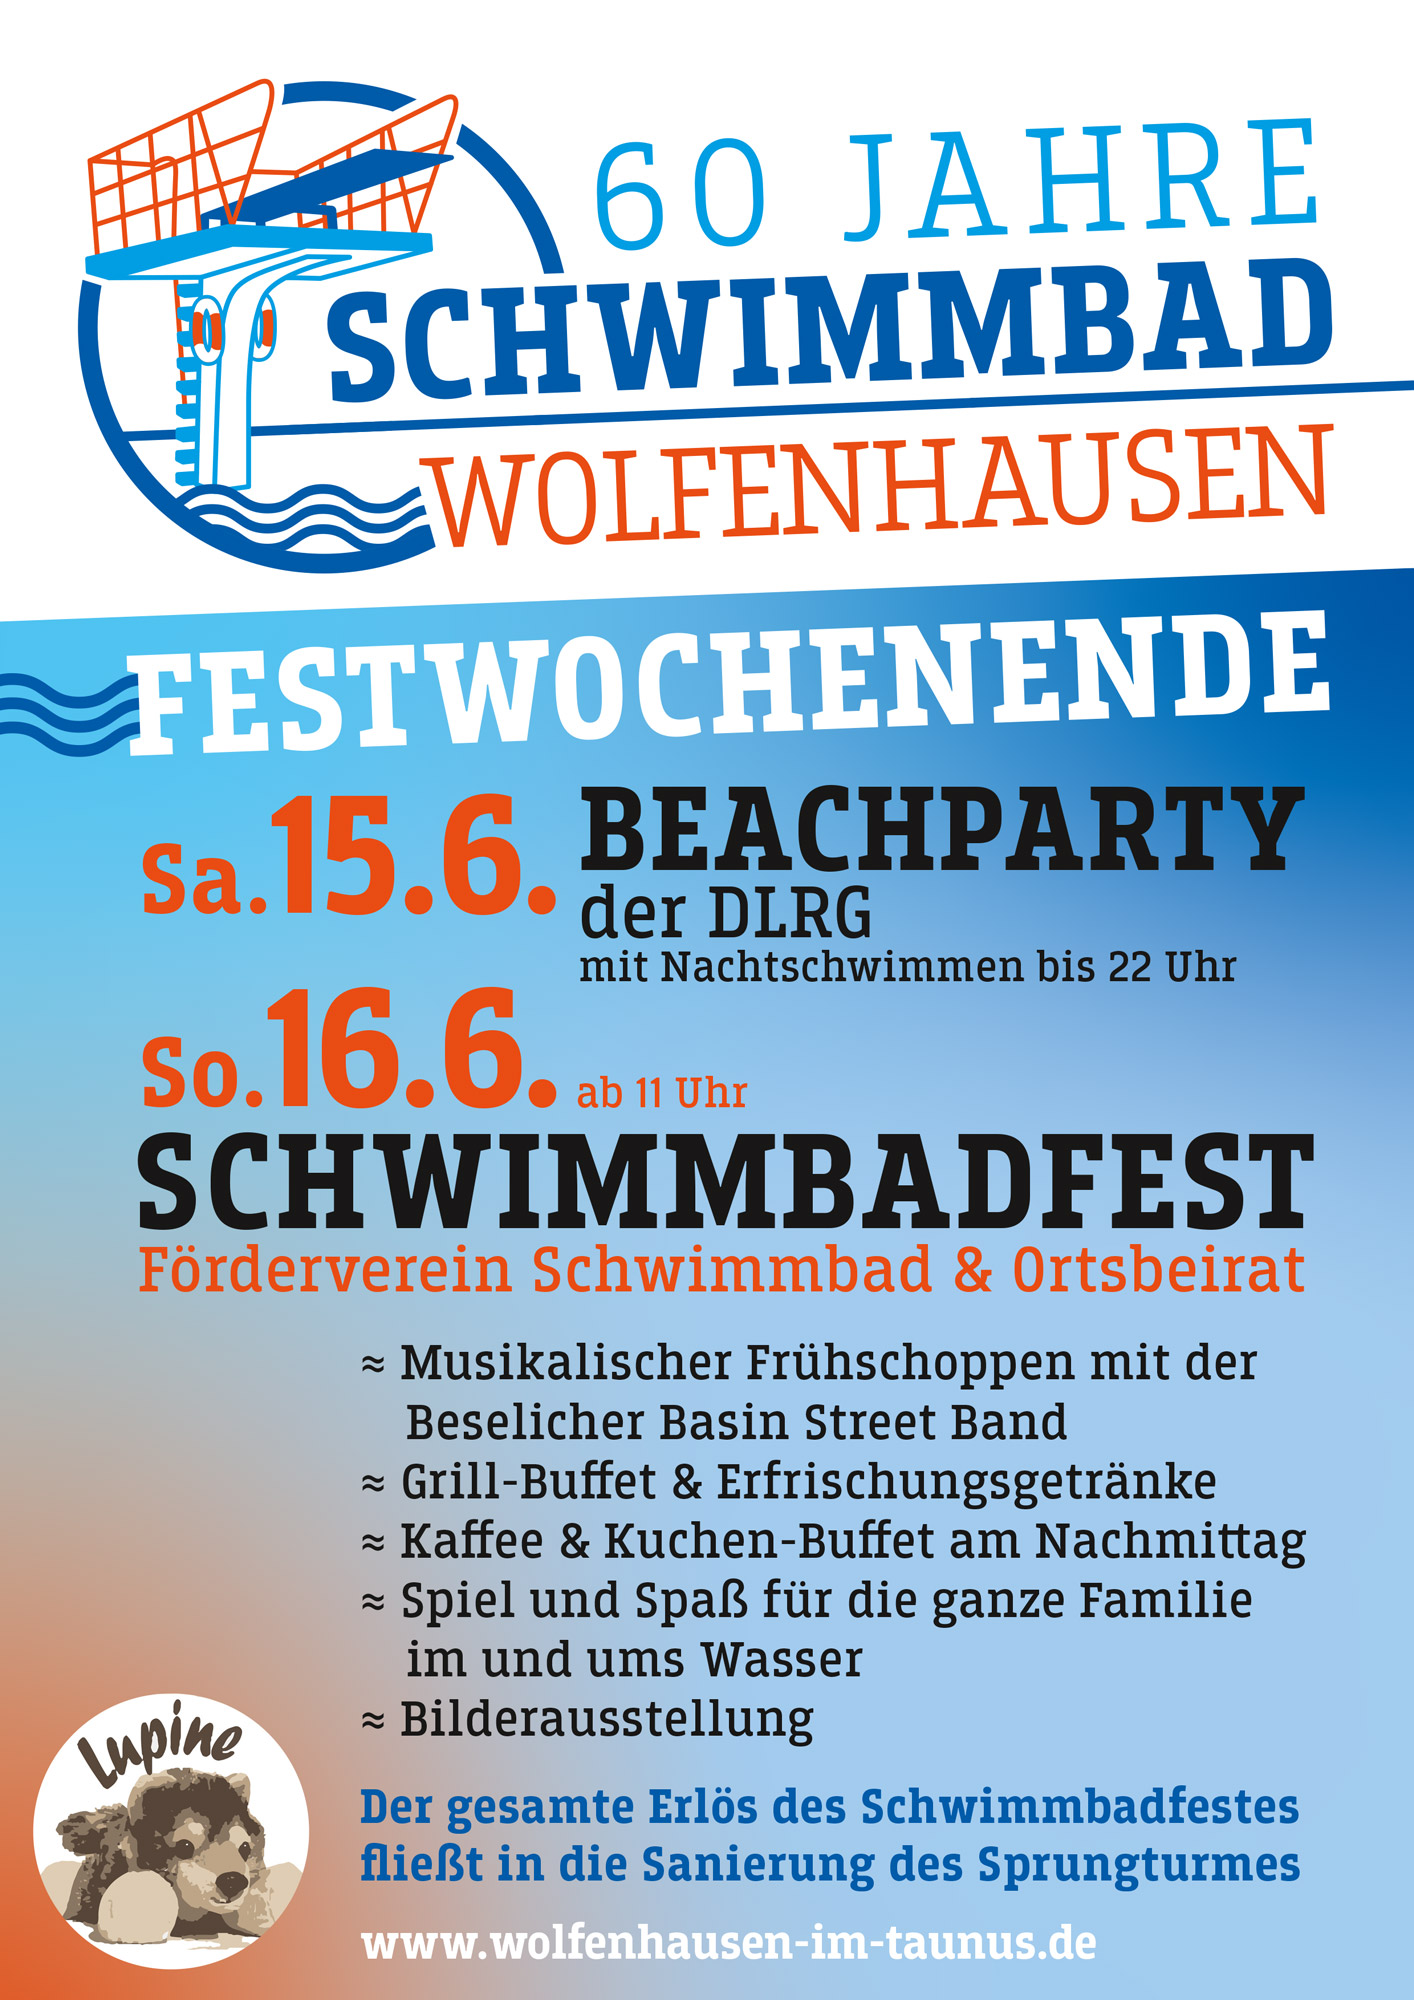 60Jahre Schwimmbad Wolfenhausen – Jubiläum Plakat